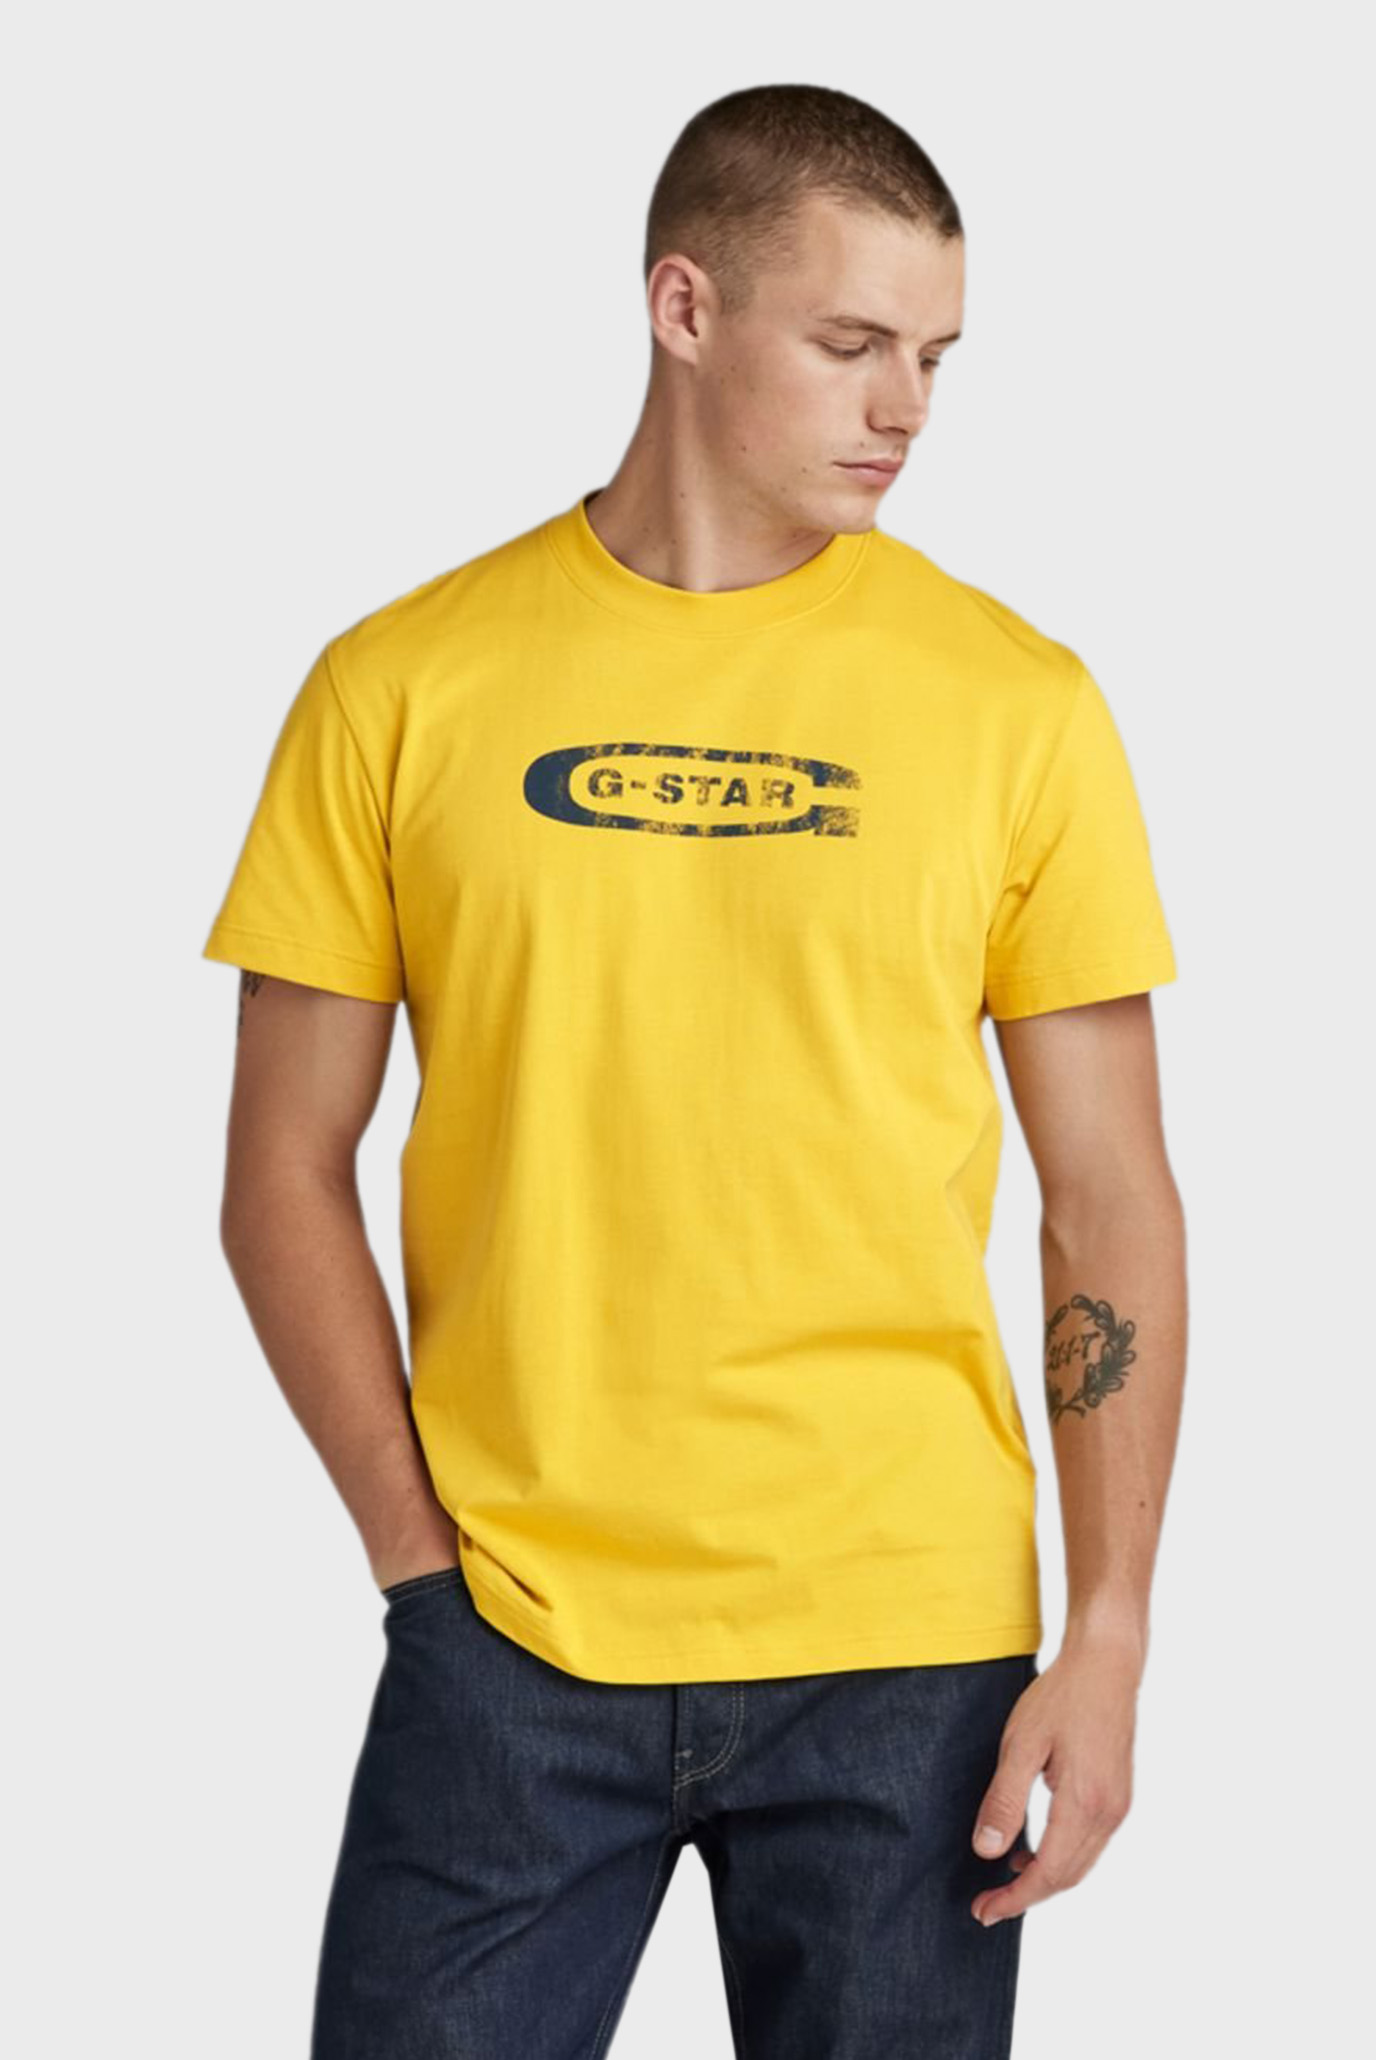 Мужская желтая футболка Distressed old school logo r t 1